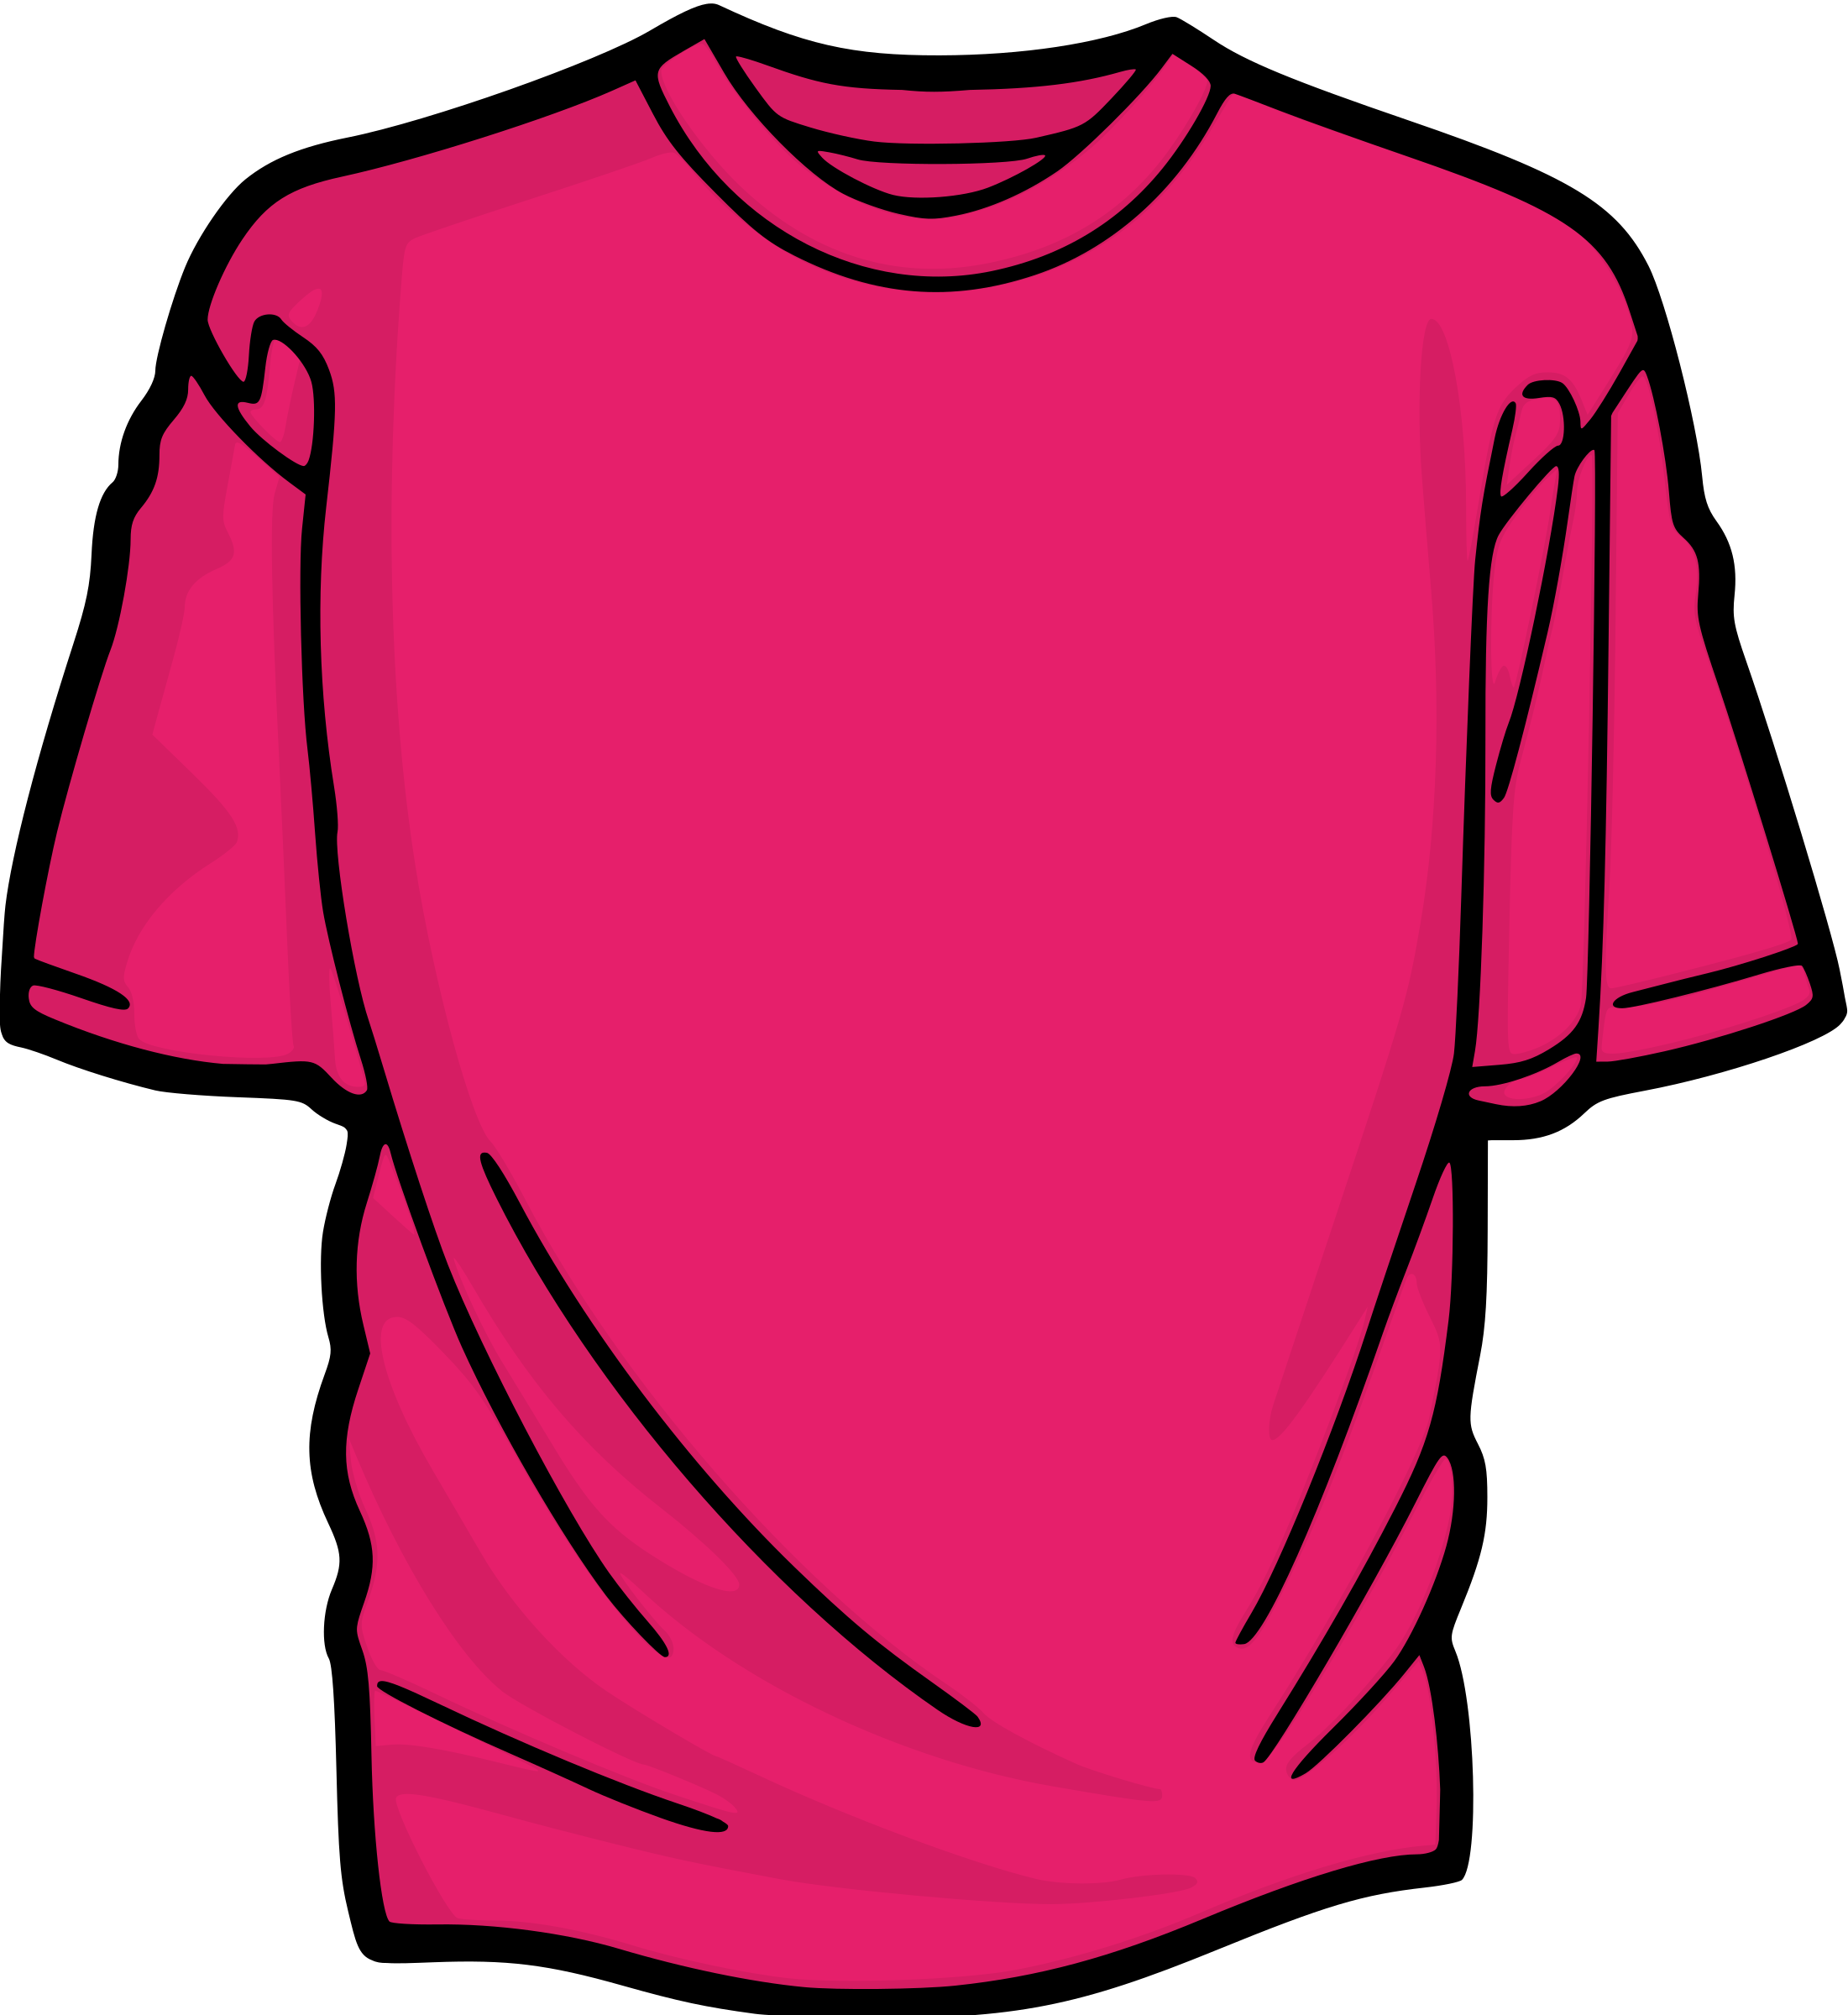 Shirt clipart colored shirt, Shirt colored shirt Transparent